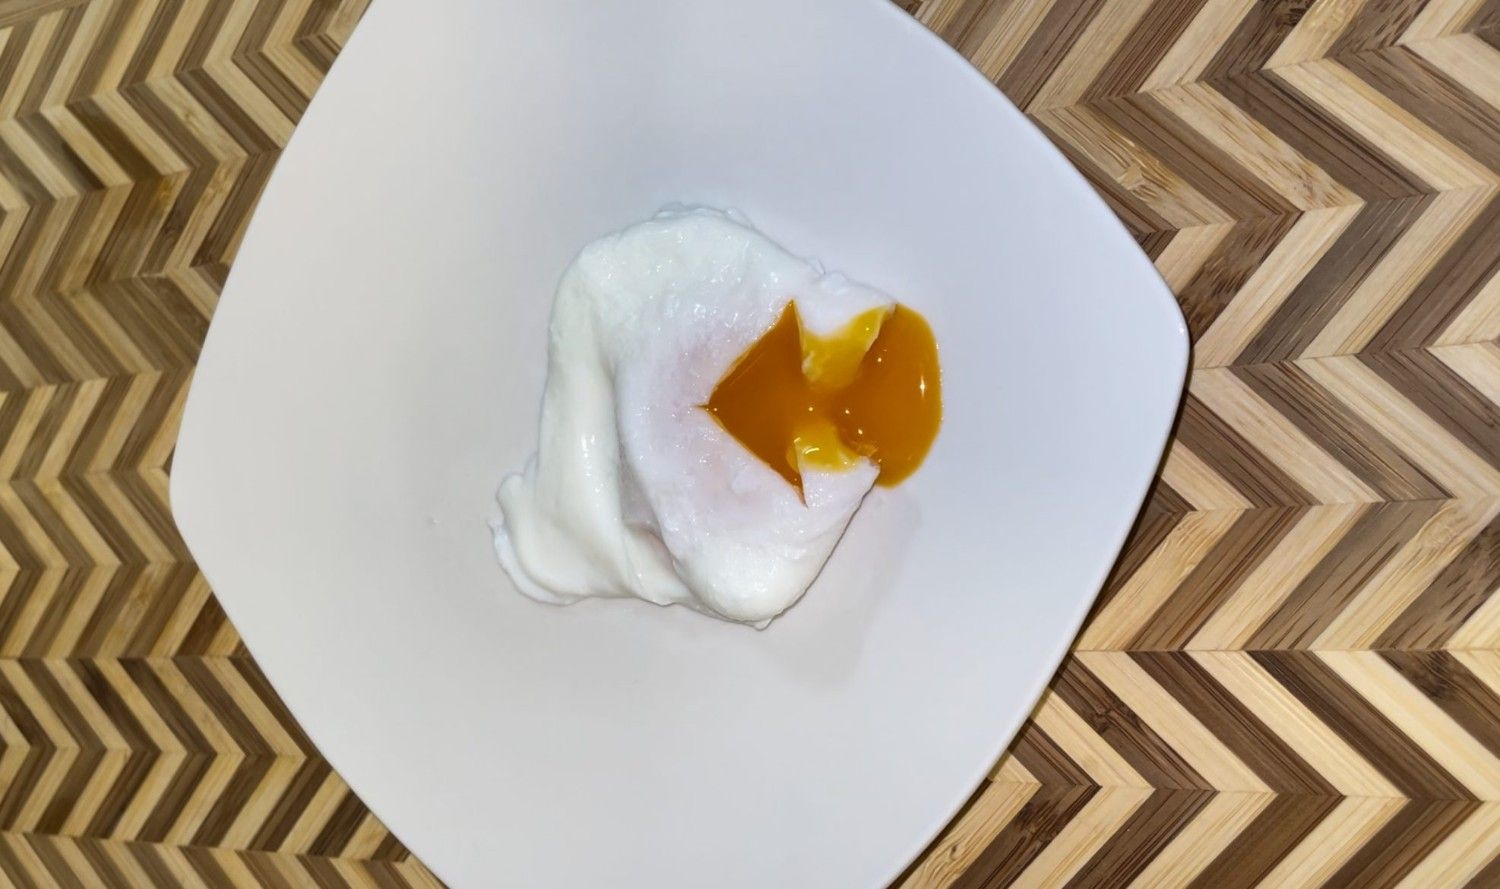 Δείτε πως μπορούμε να φτιάξουμε στο σπίτι μας αυγά ποσέ εύκολα και γρήγορα. Ιδανικά για το πρωϊνό μας και το brunch μας.